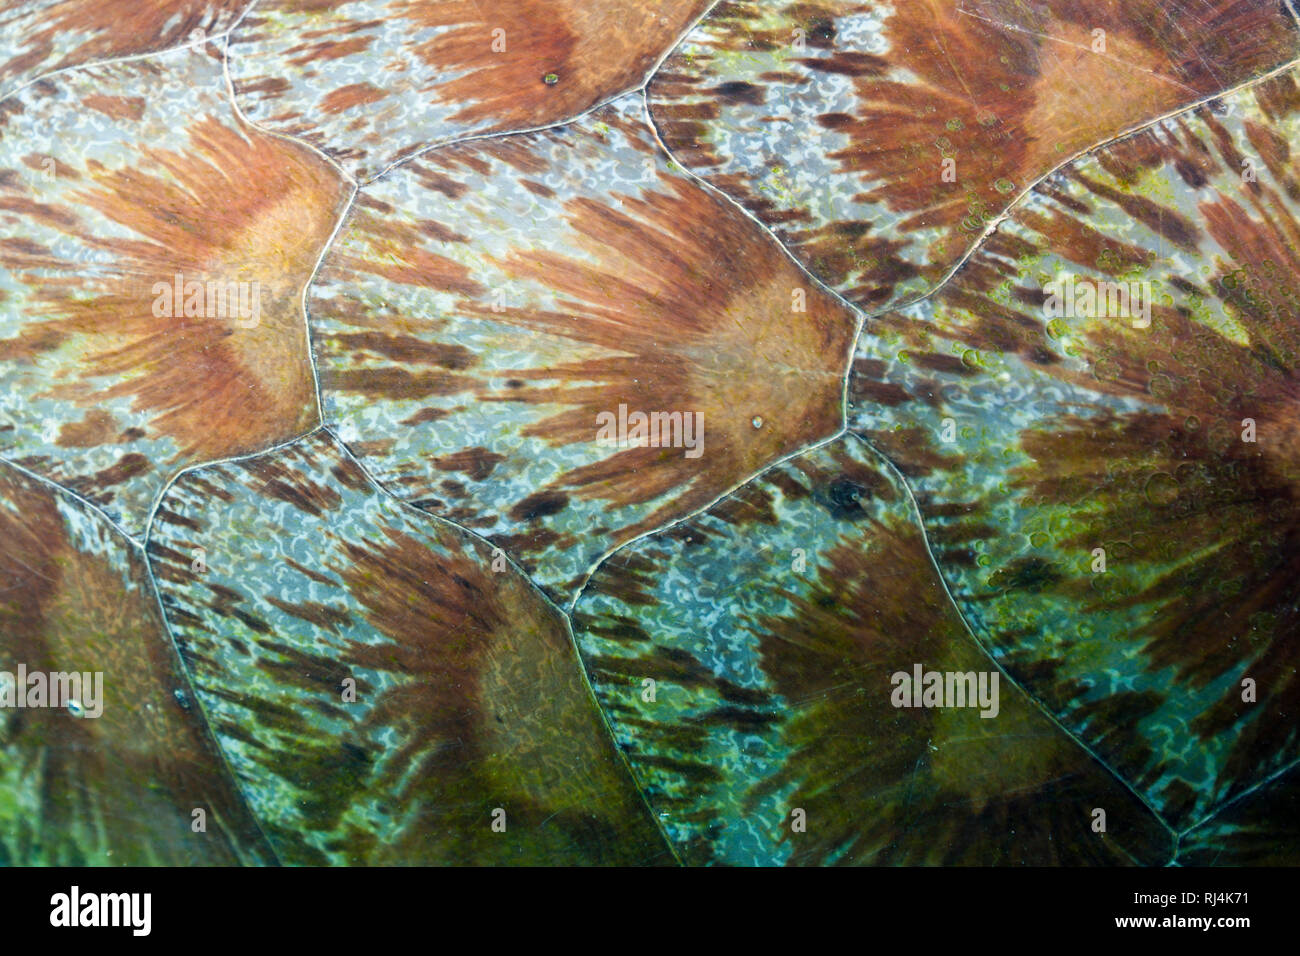 Schild einer Gruenen Meeresschildkroete, Chelonia mydas, Komodo Nationalpark, Indonesien Stock Photo